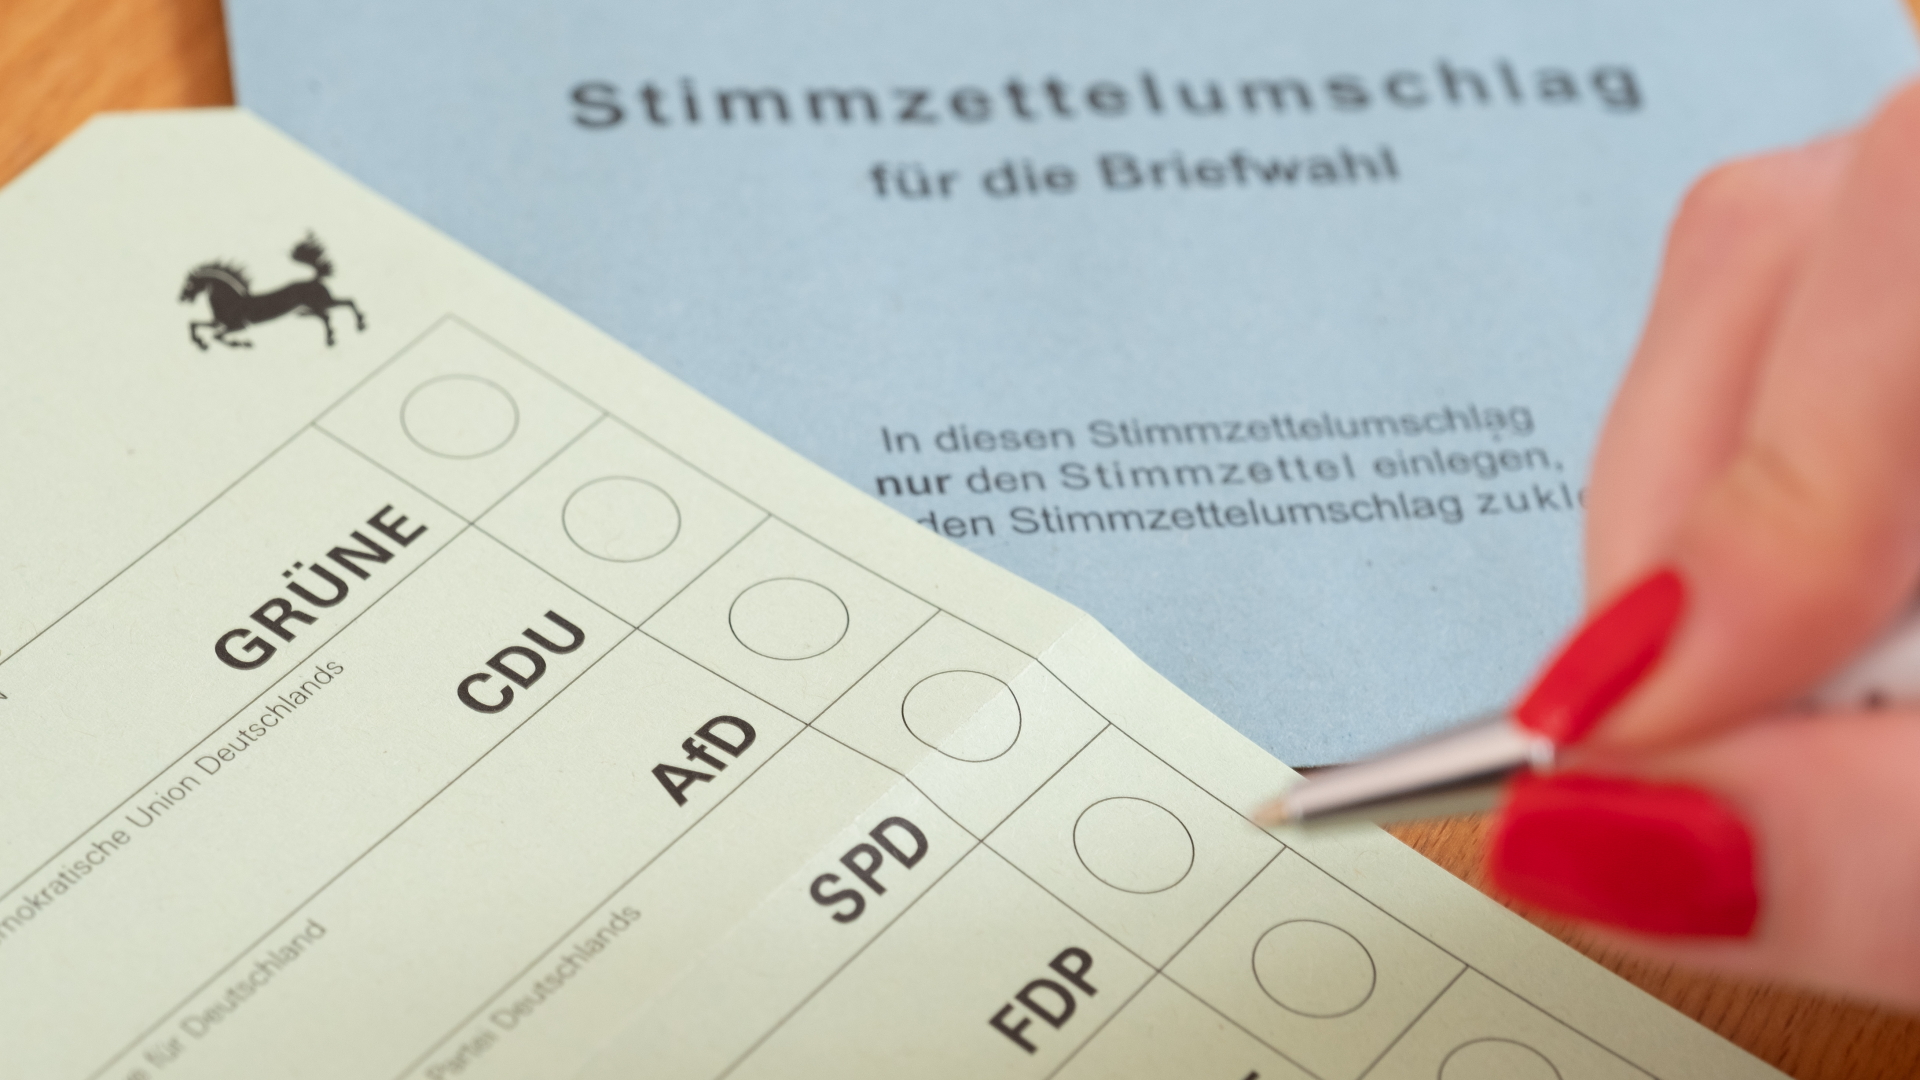 Ein Stimmzettel für die Briefwahl für die Landtagswahl am 14. März 2021 in Baden-Württemberg liegt auf einem Tisch